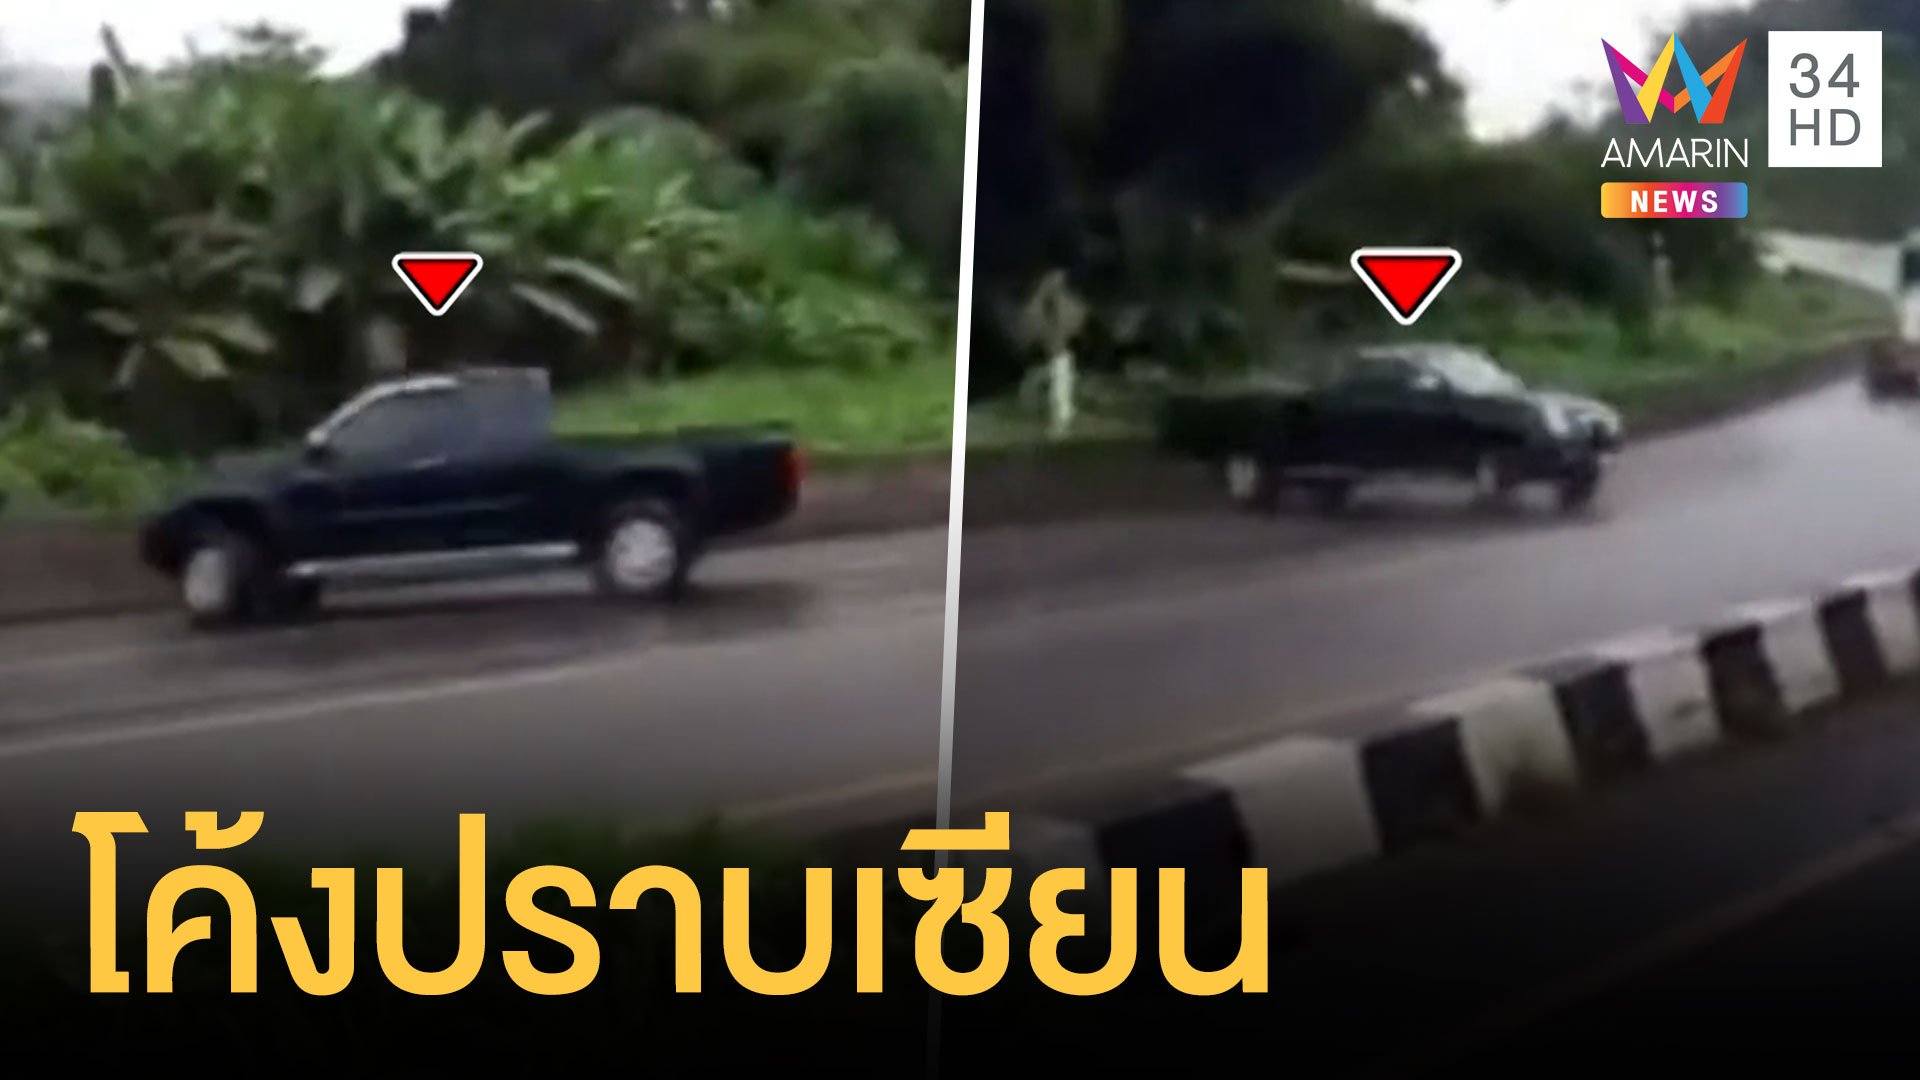 กระบะเข้าโค้งปราบเซียนรถหมุนติ้ว กู้ภัยบอกตรงนี้อุบัติเหตุบ่อย | ข่าวเที่ยงอมรินทร์ | 17 ต.ค. 64 | AMARIN TVHD34